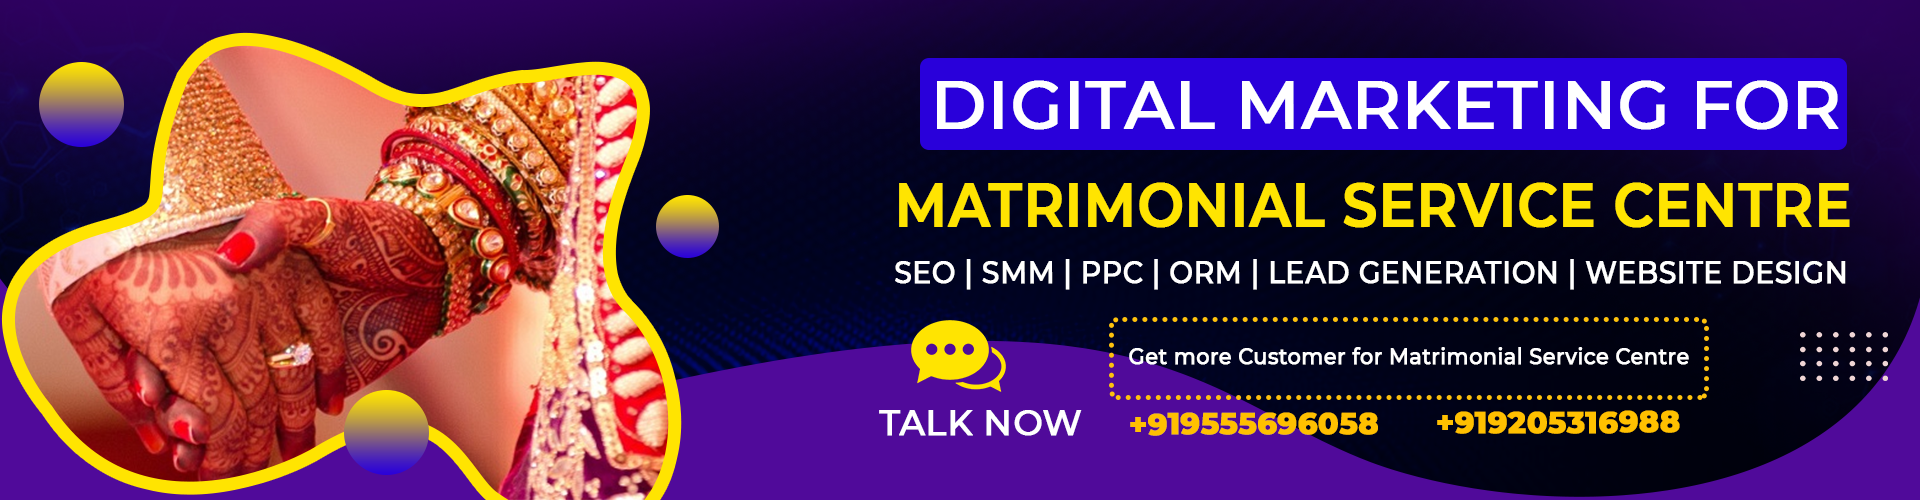 digital-marketing-for-matrimonial-service-centre